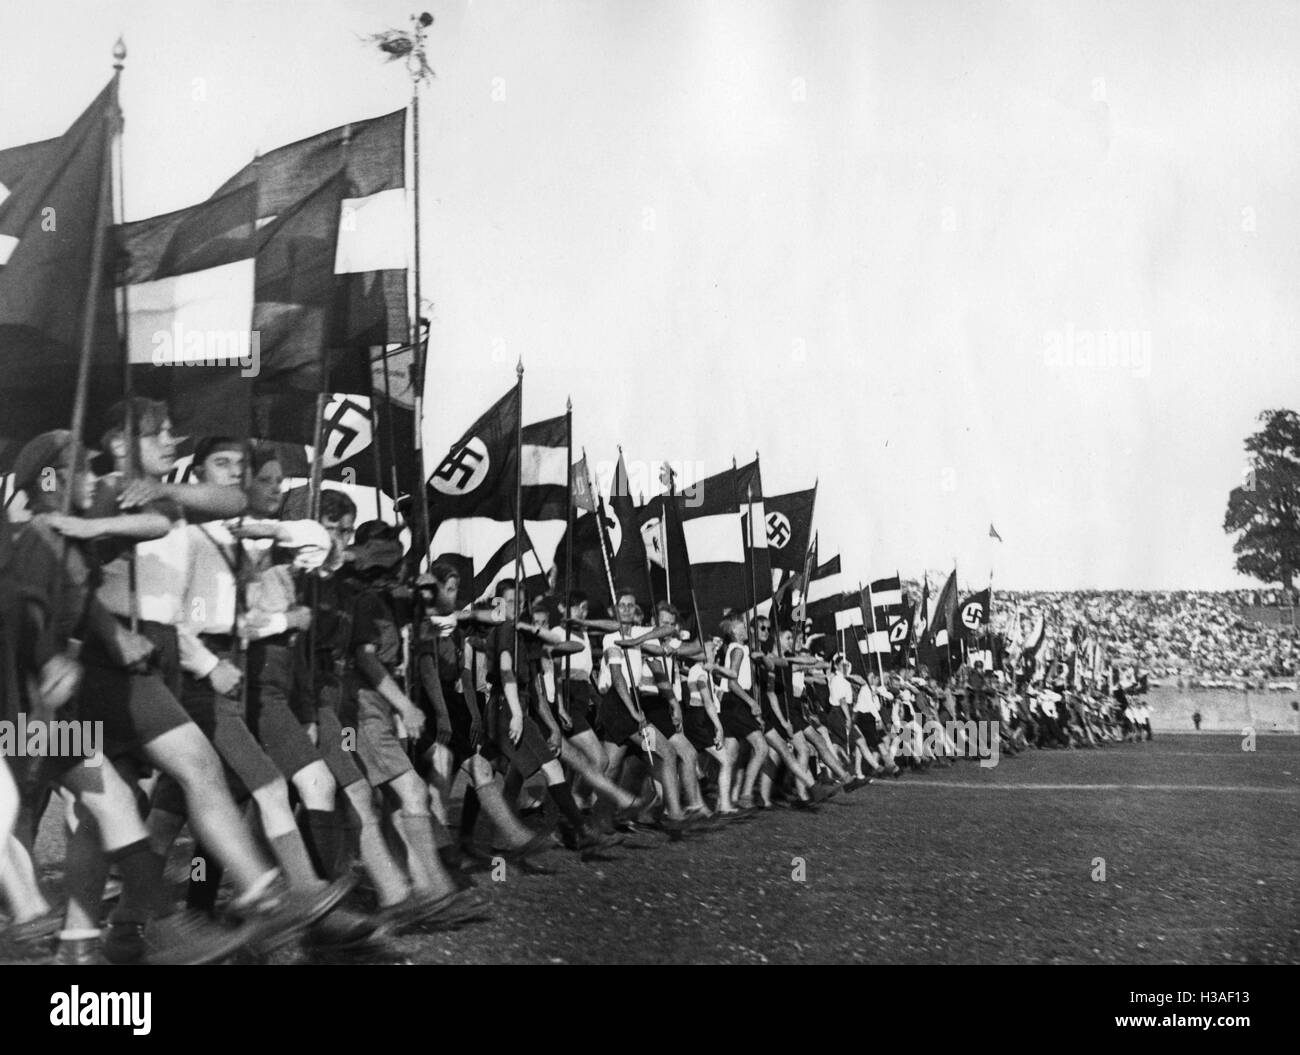 Schwarz-Weiss-Rote (noir blanc rouge) et les drapeaux à croix gammée un festival sportif à Berlin, 1933 Banque D'Images